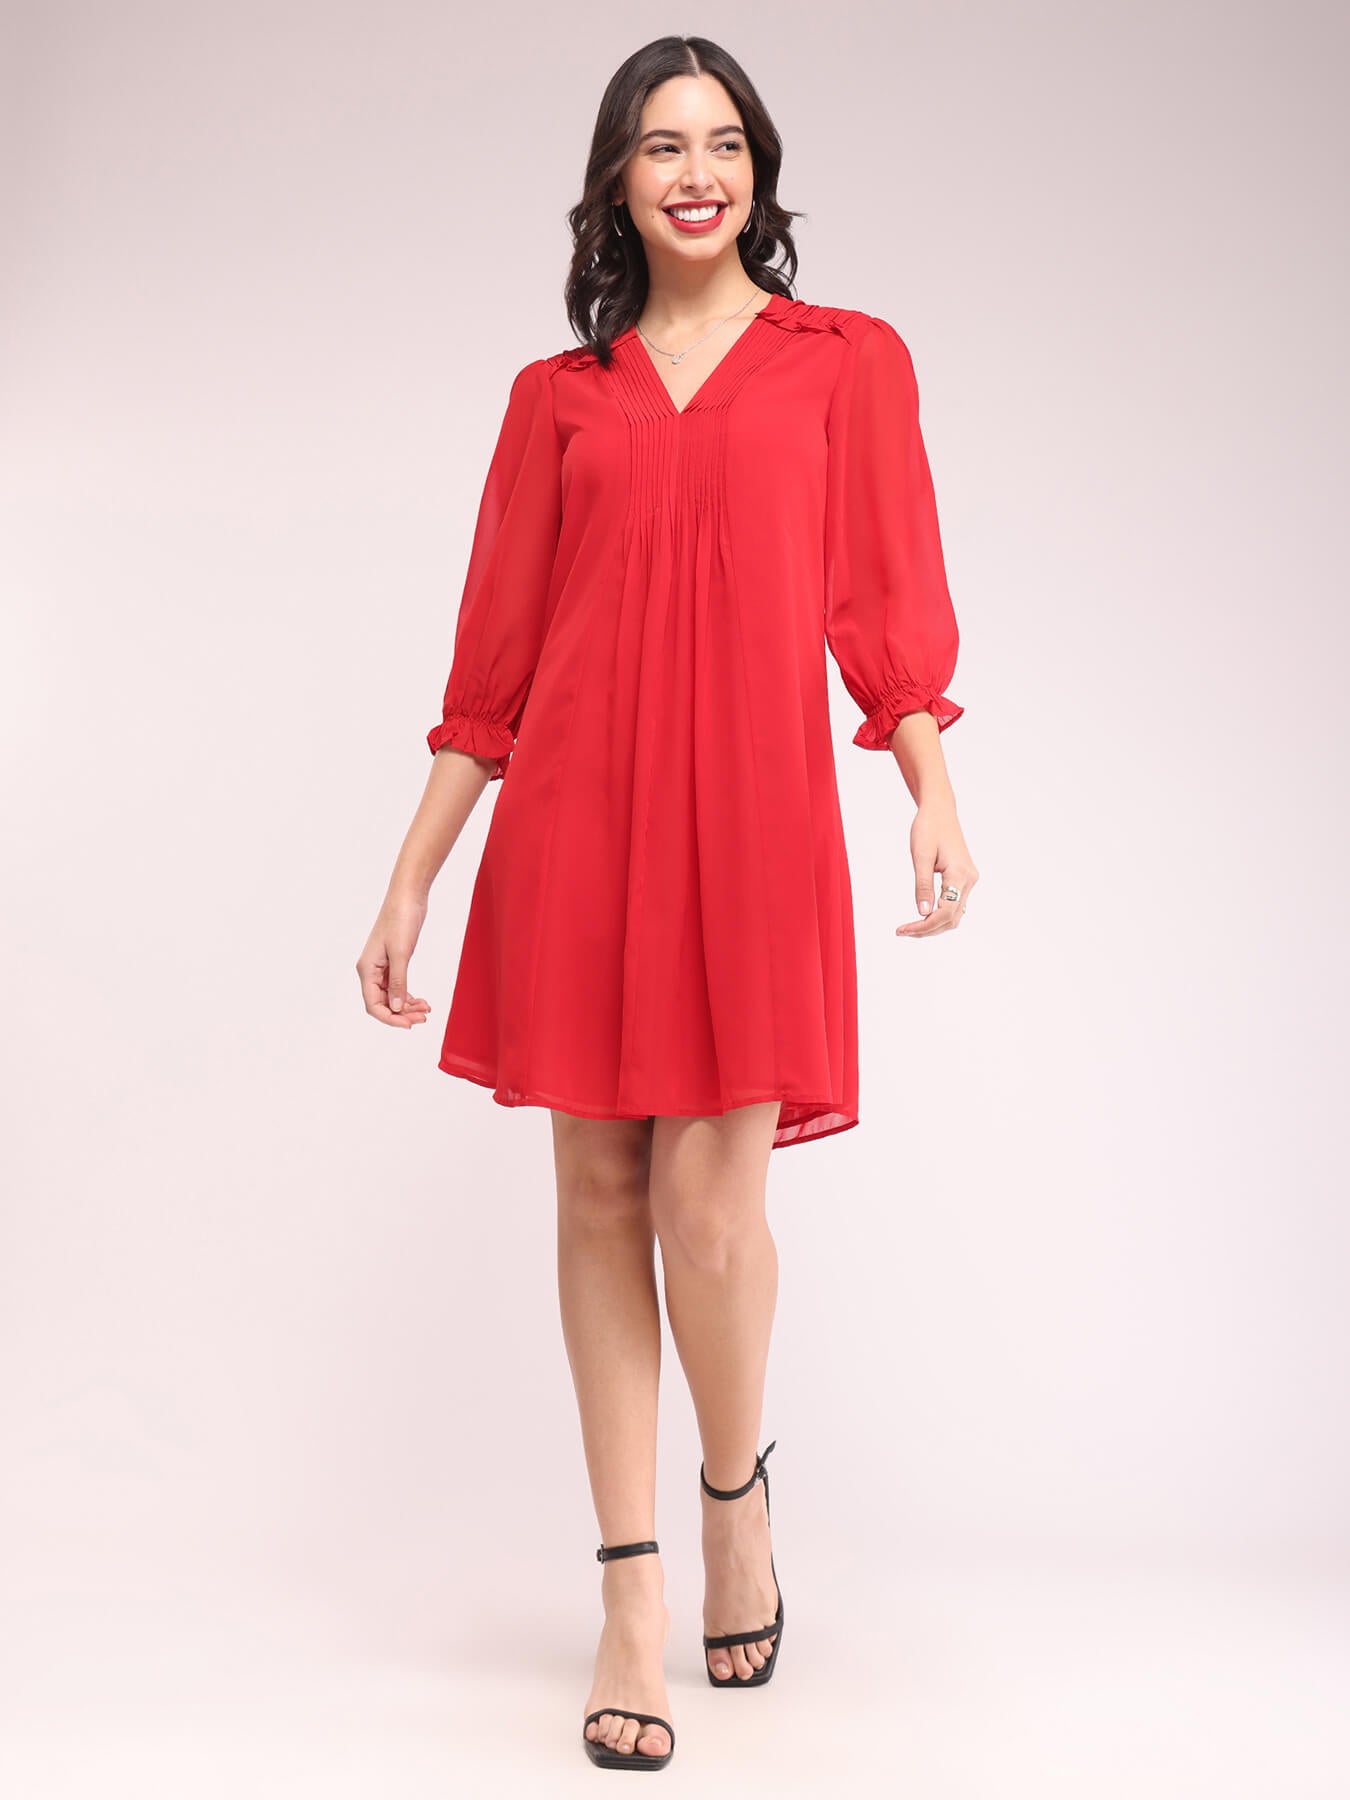 Pintuck A-line Dress - Red